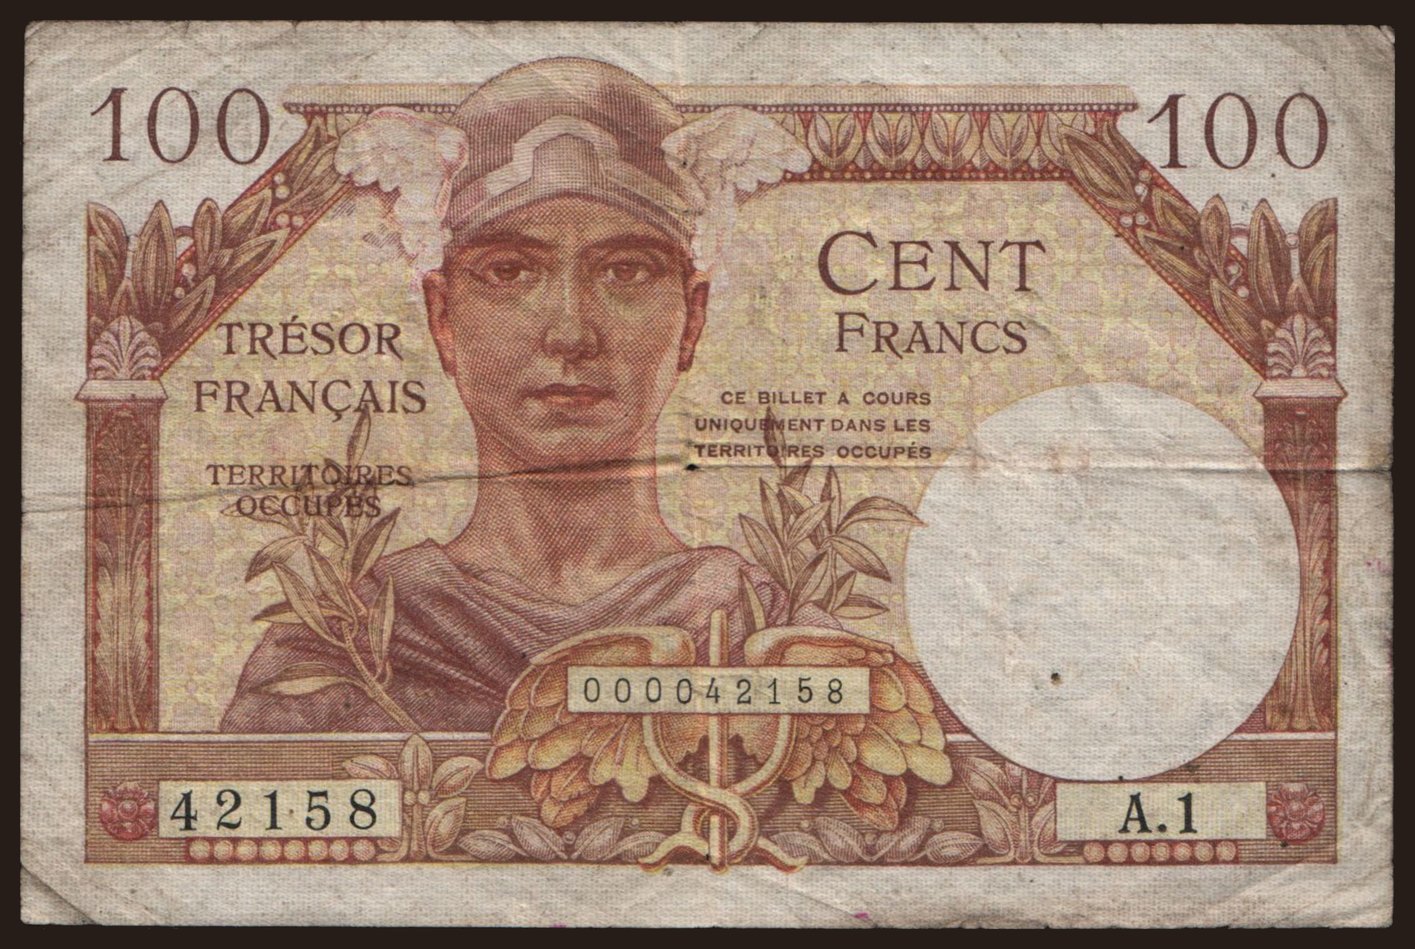 Tresor Francais, 100 francs, 1947